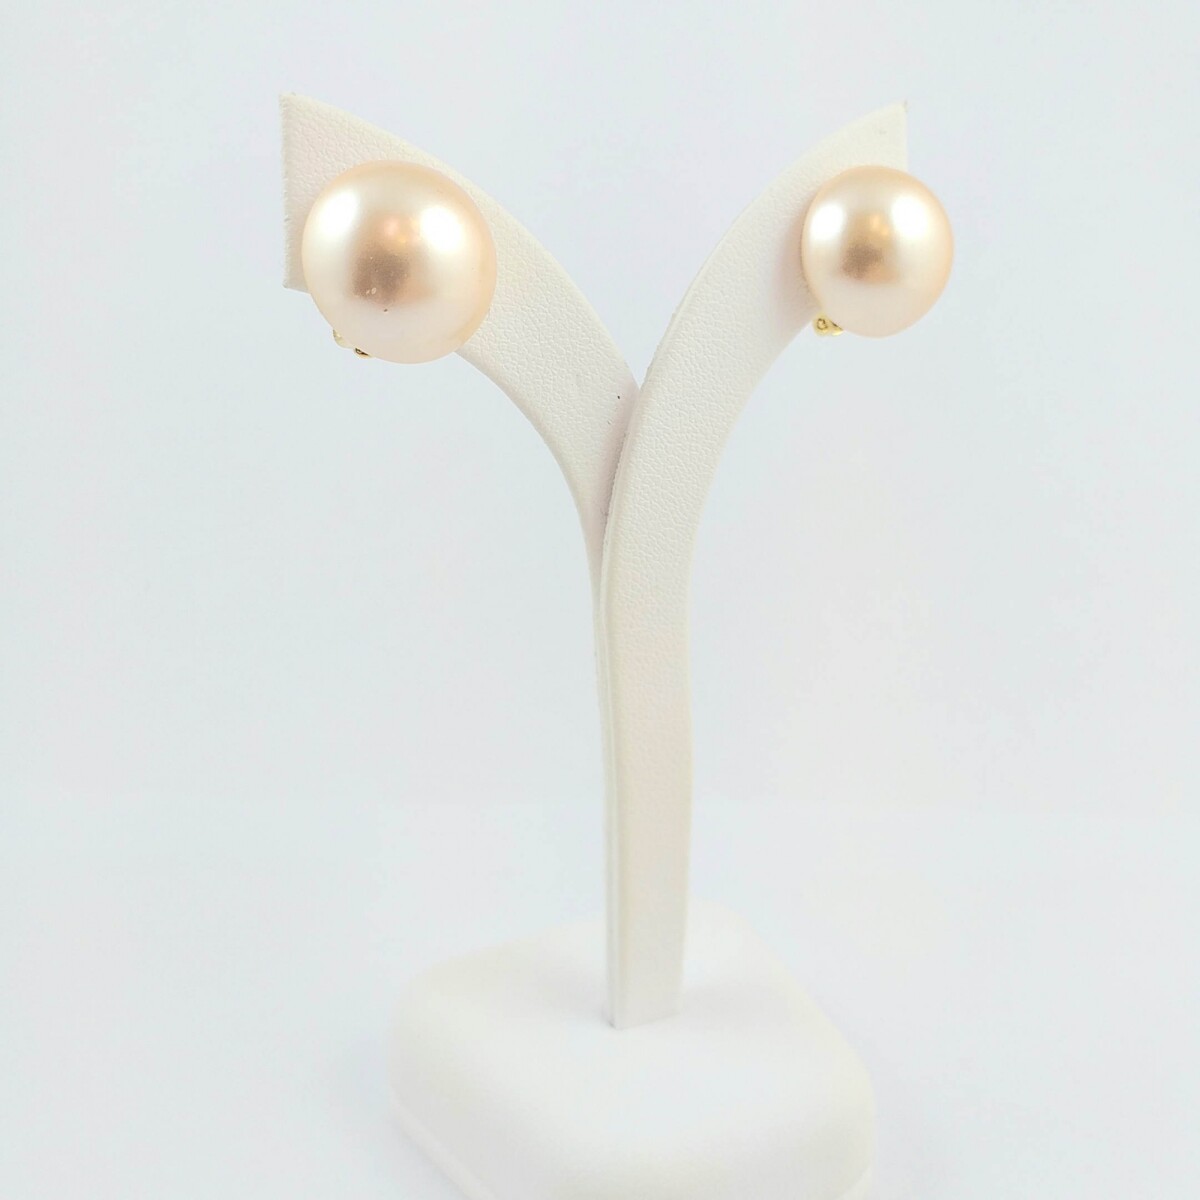 Caravanas perla de fantasía y enchapado en oro, diámetro de la perla 15mm, cierre a presión. 